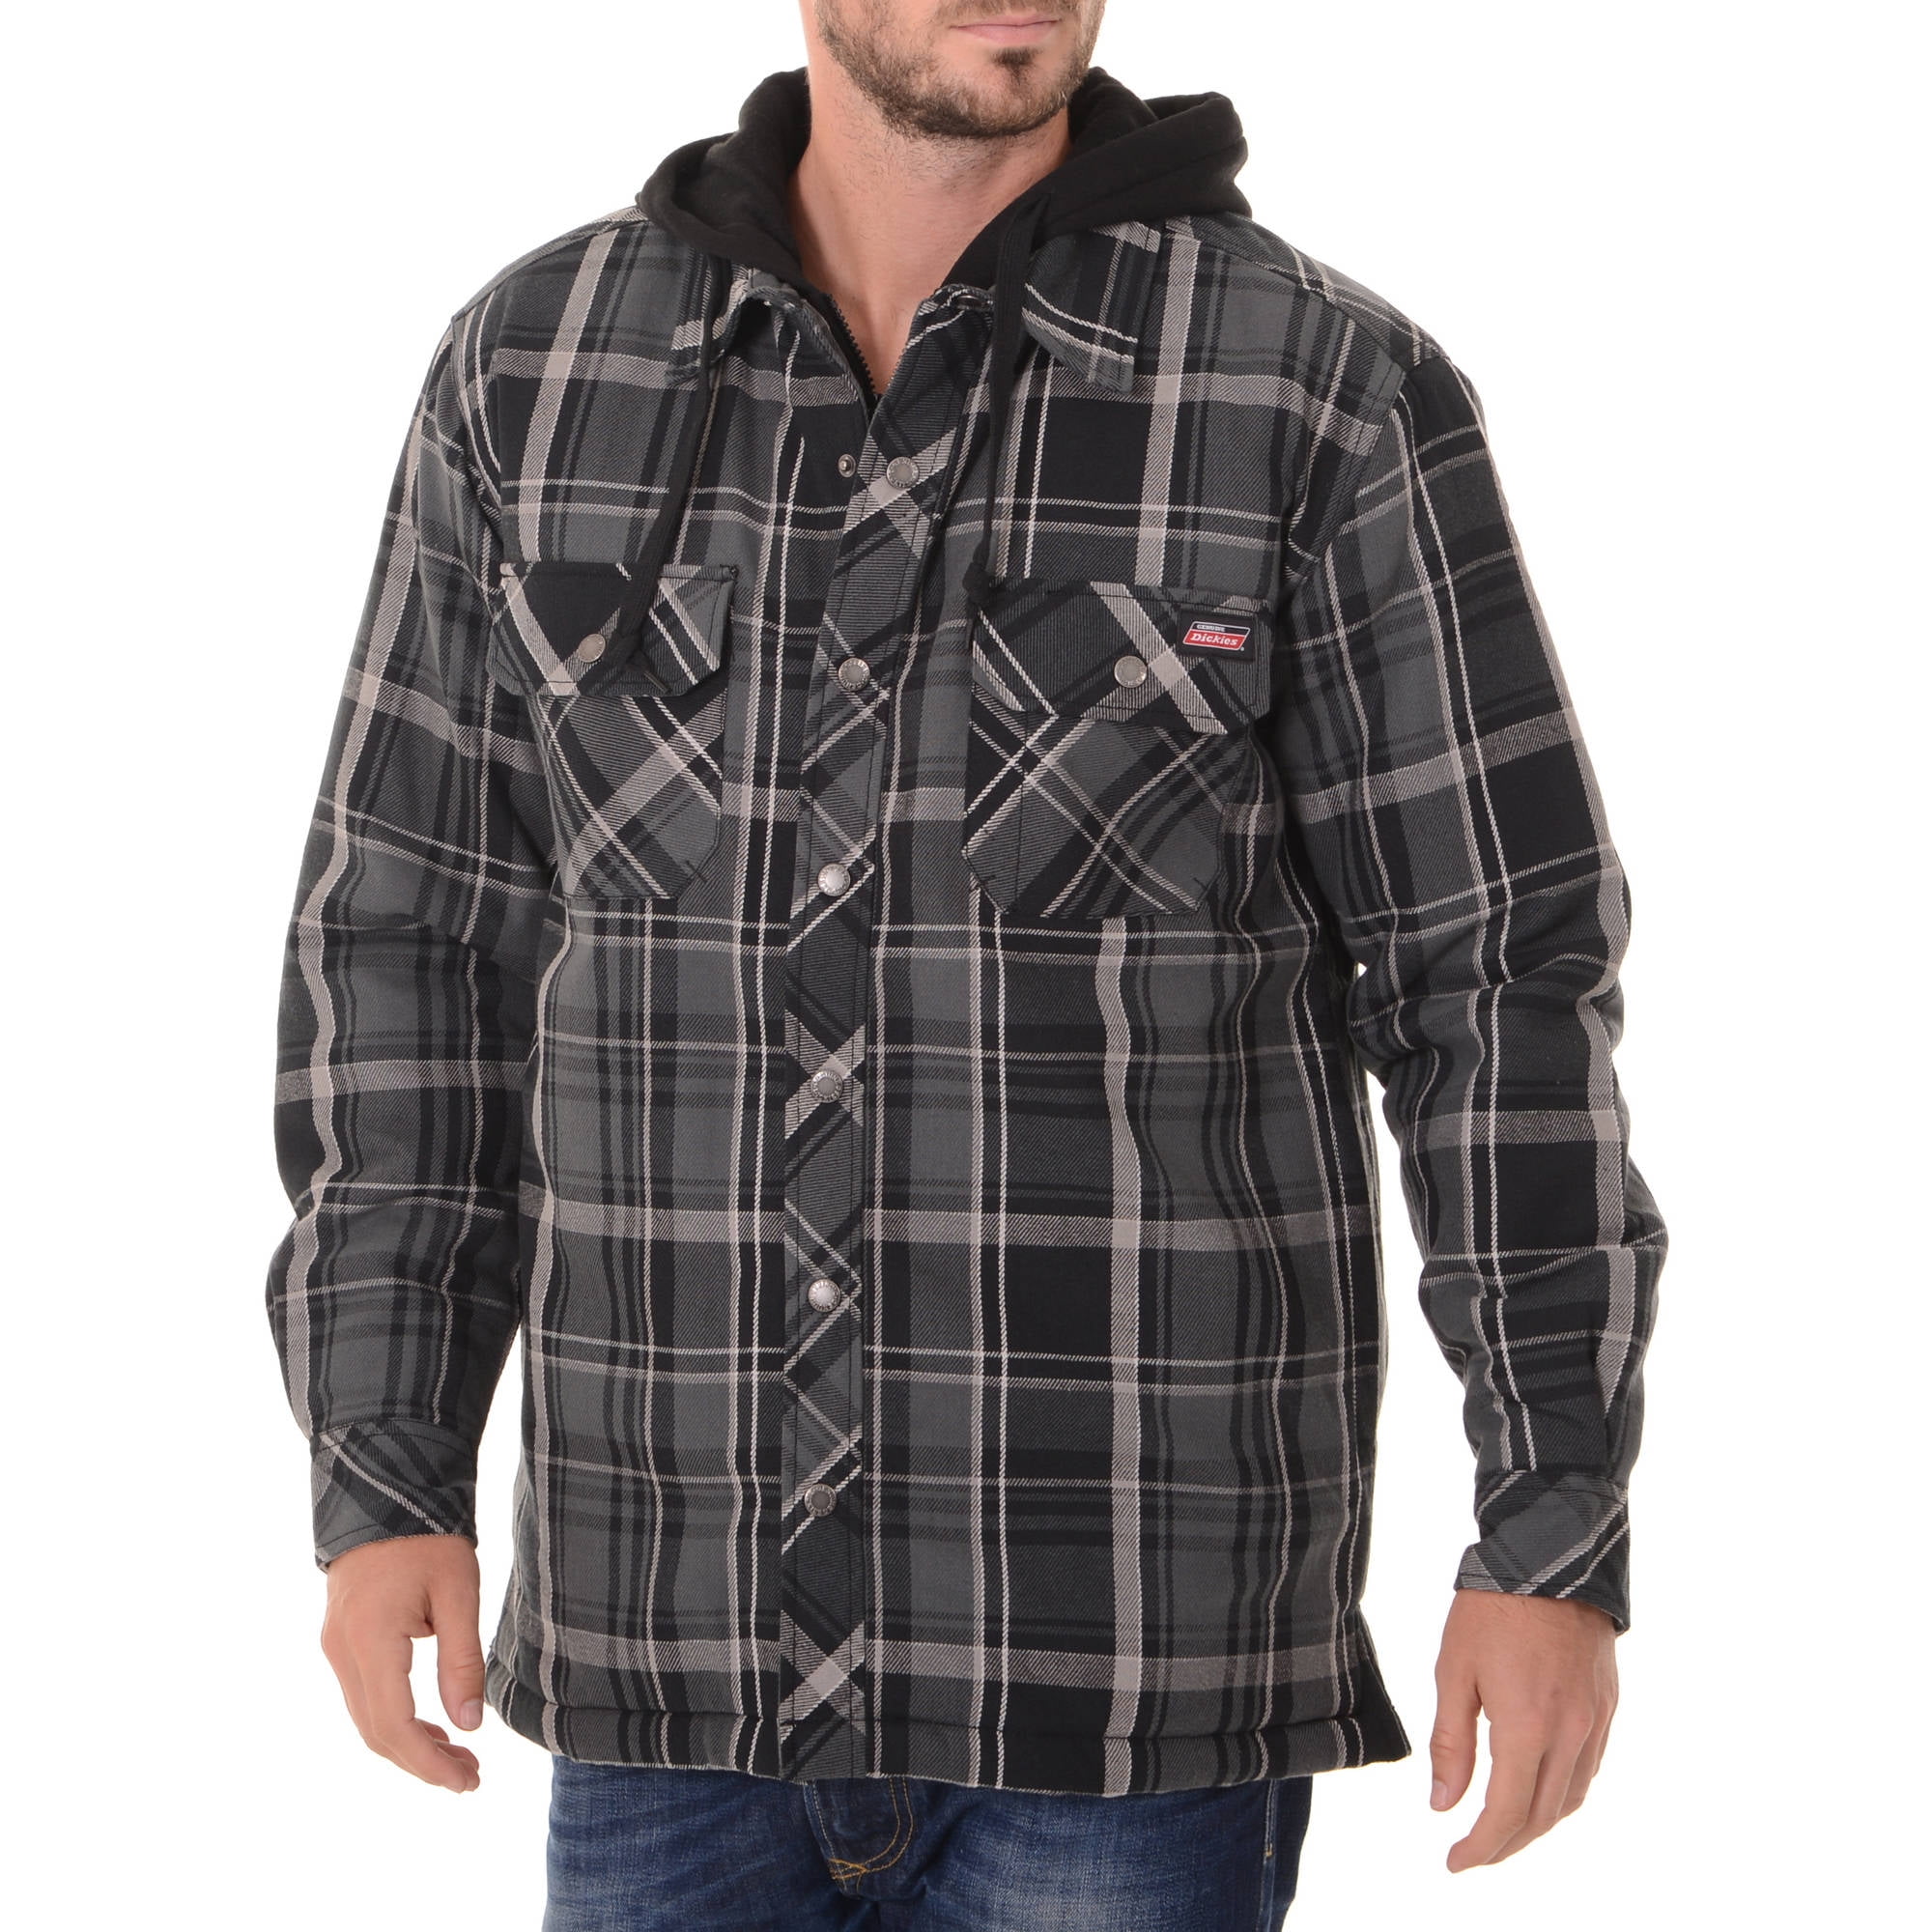 Big Men's Flannel Shirt Jacket - Walmart.com